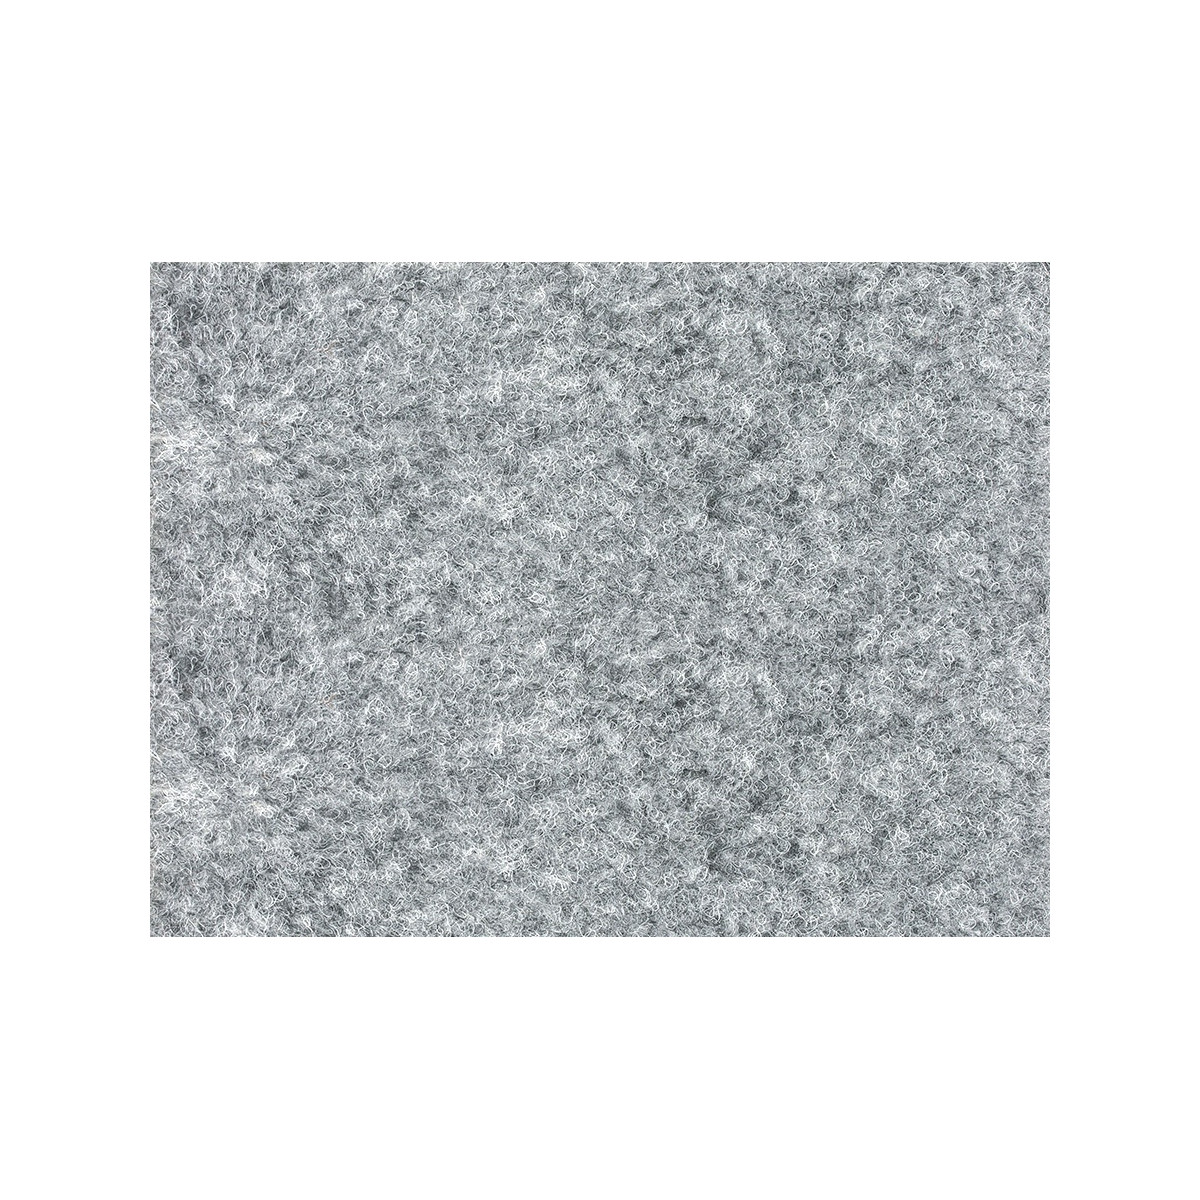 Metrážový koberec Santana 14 šedá s podkladem resine, zátěžový